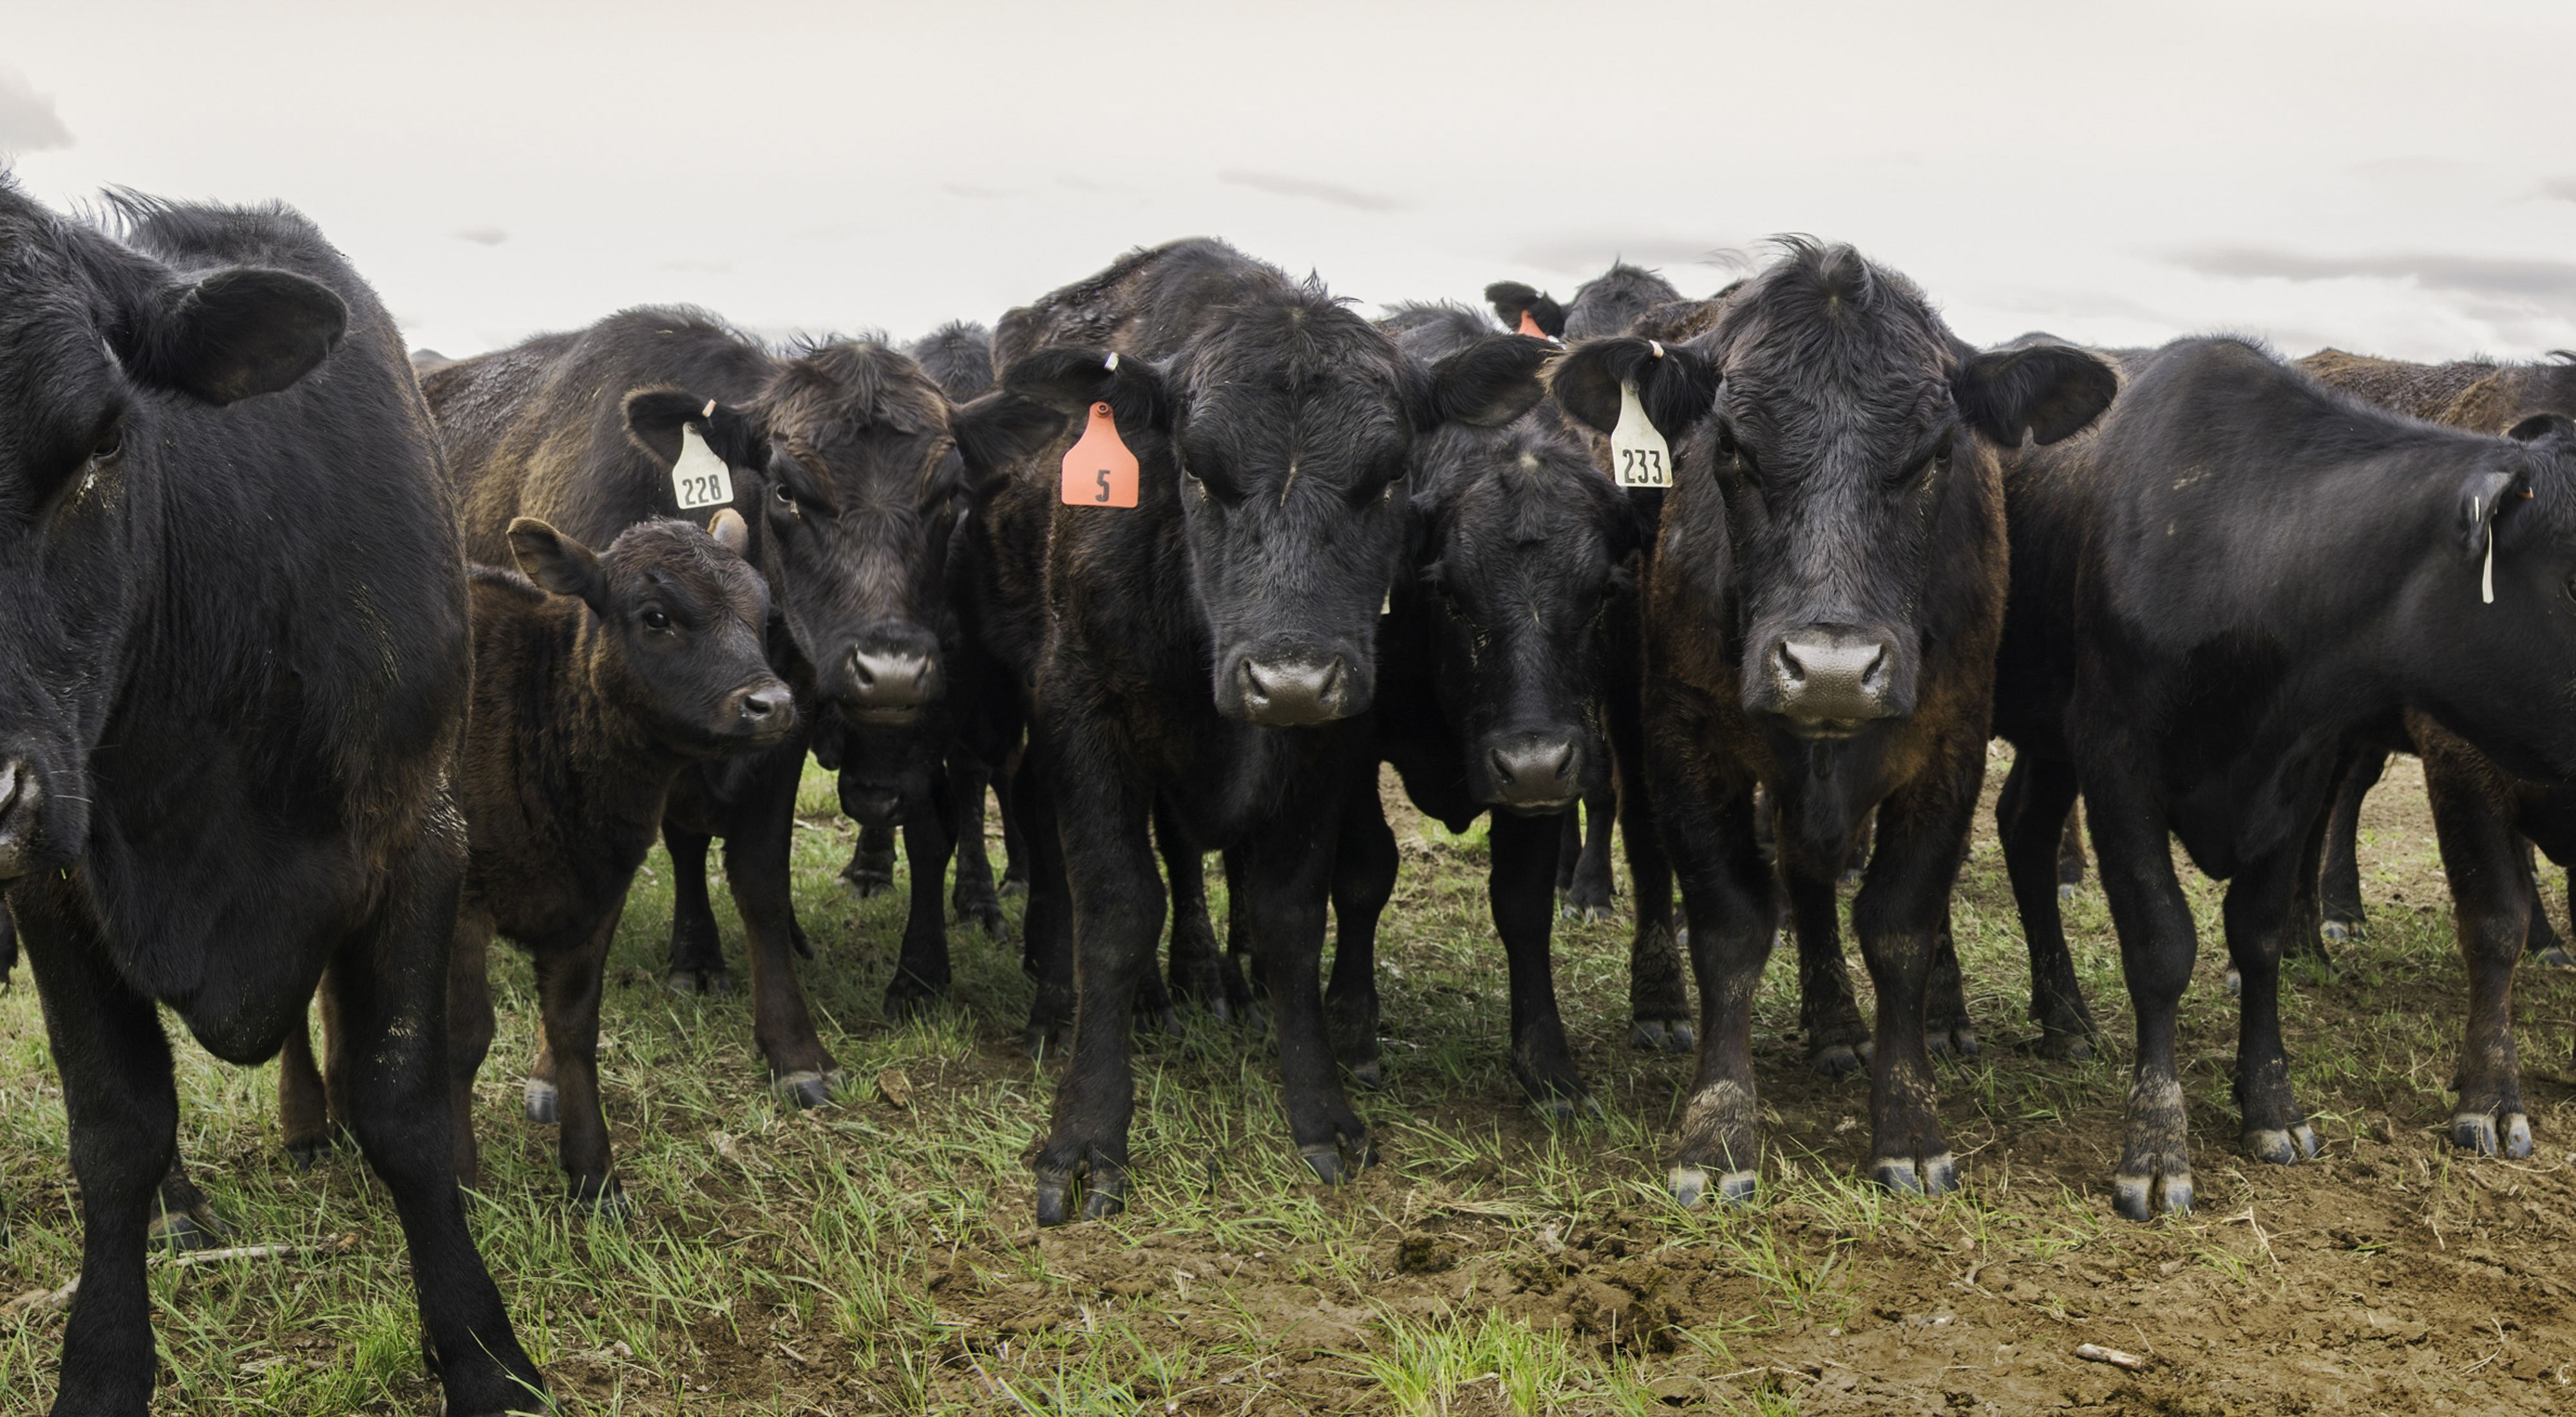 Cattle grazing in Laramie Wyoming.